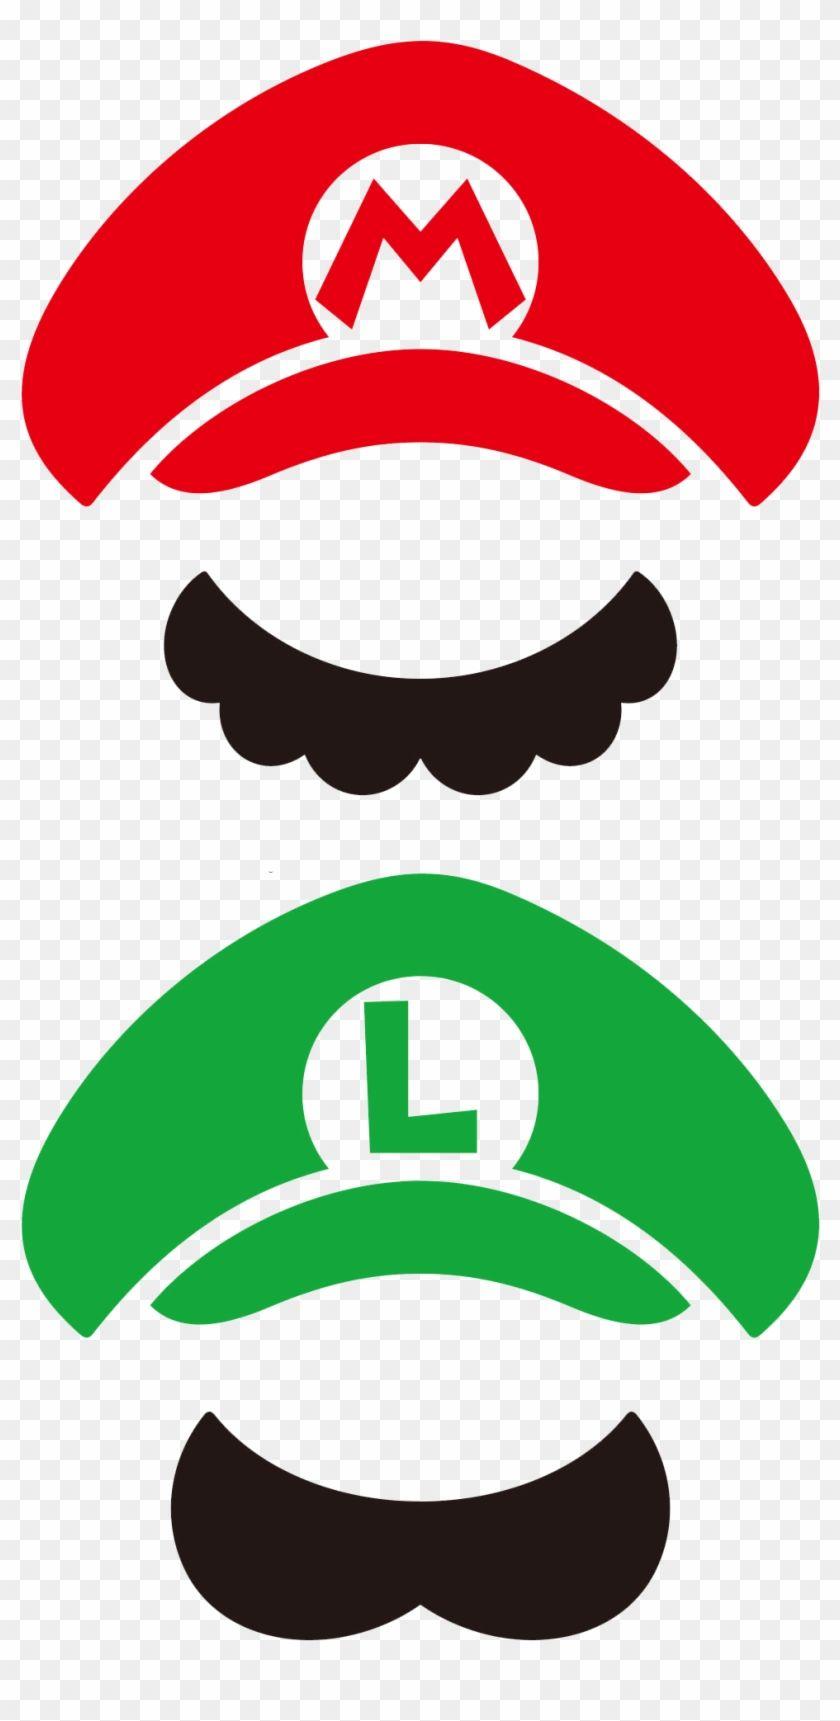 Mario and Luigi Logo - New Super Mario Bros Mario Bros Mario Y Luigi Png